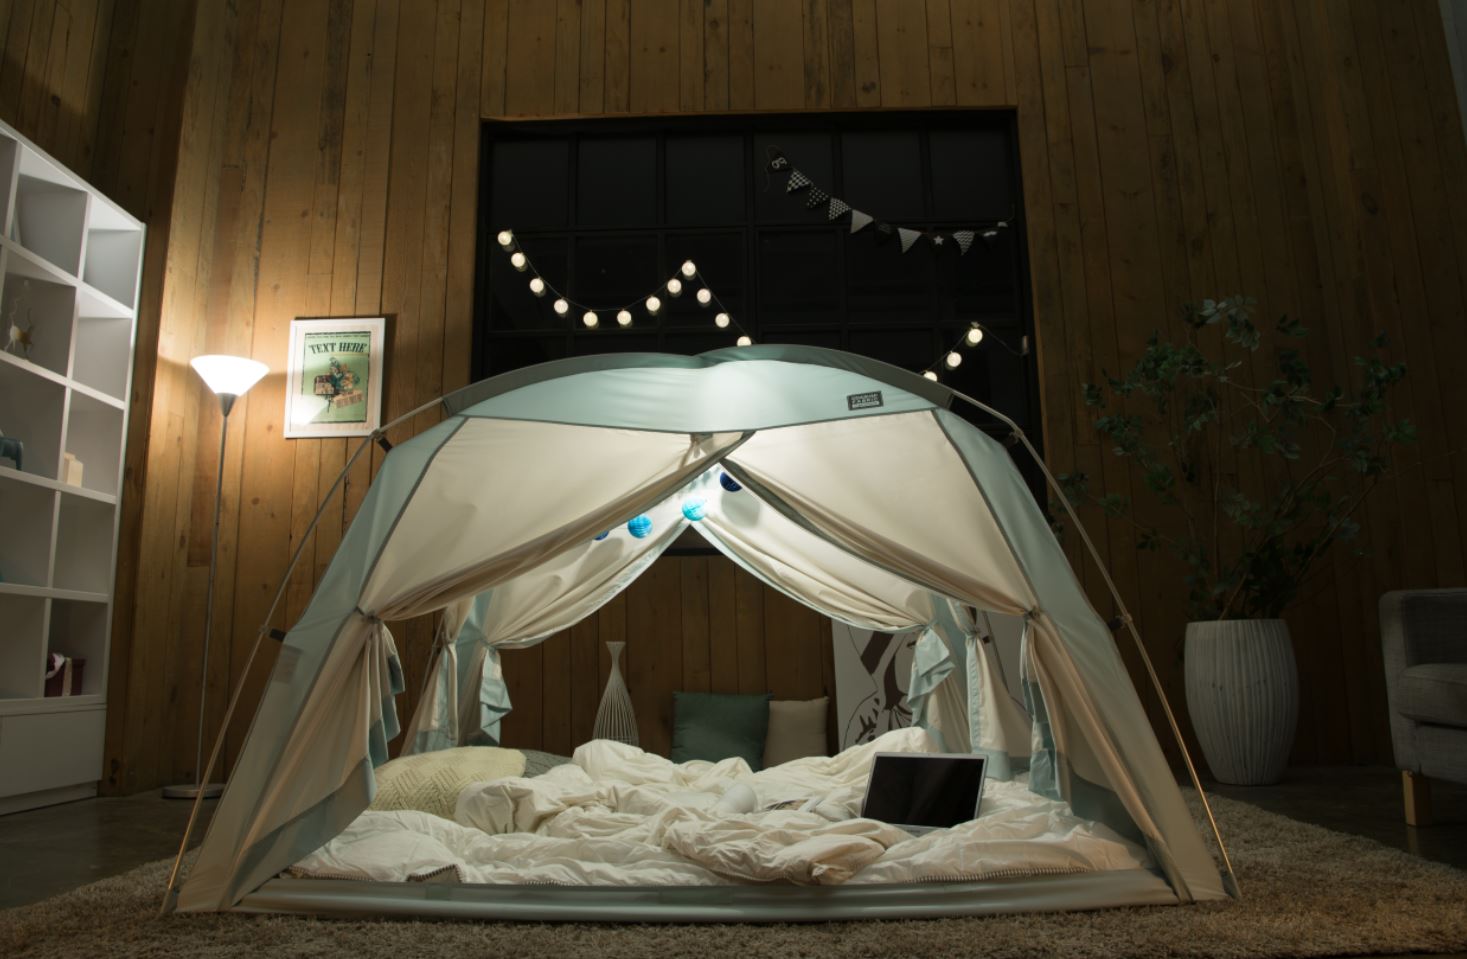 乾燥や寒さから守るTASUMI製の室内用暖房テント